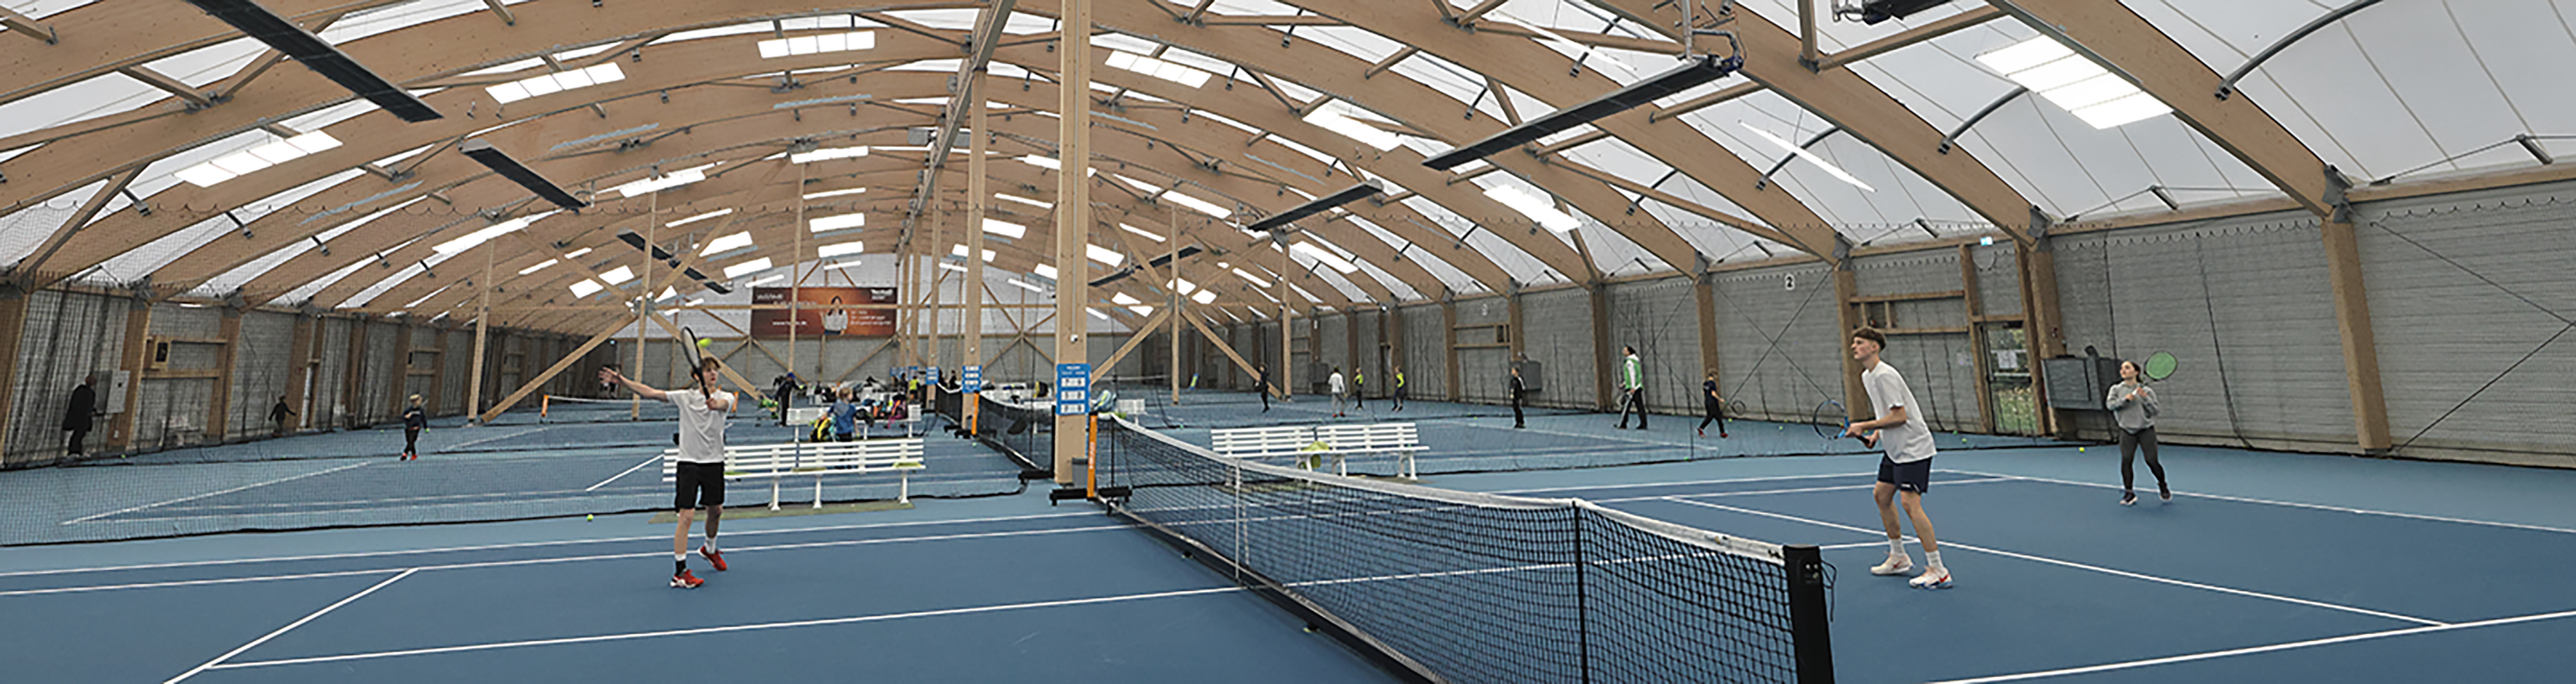 Der Tennis Club Augsburg wird klimaneutral